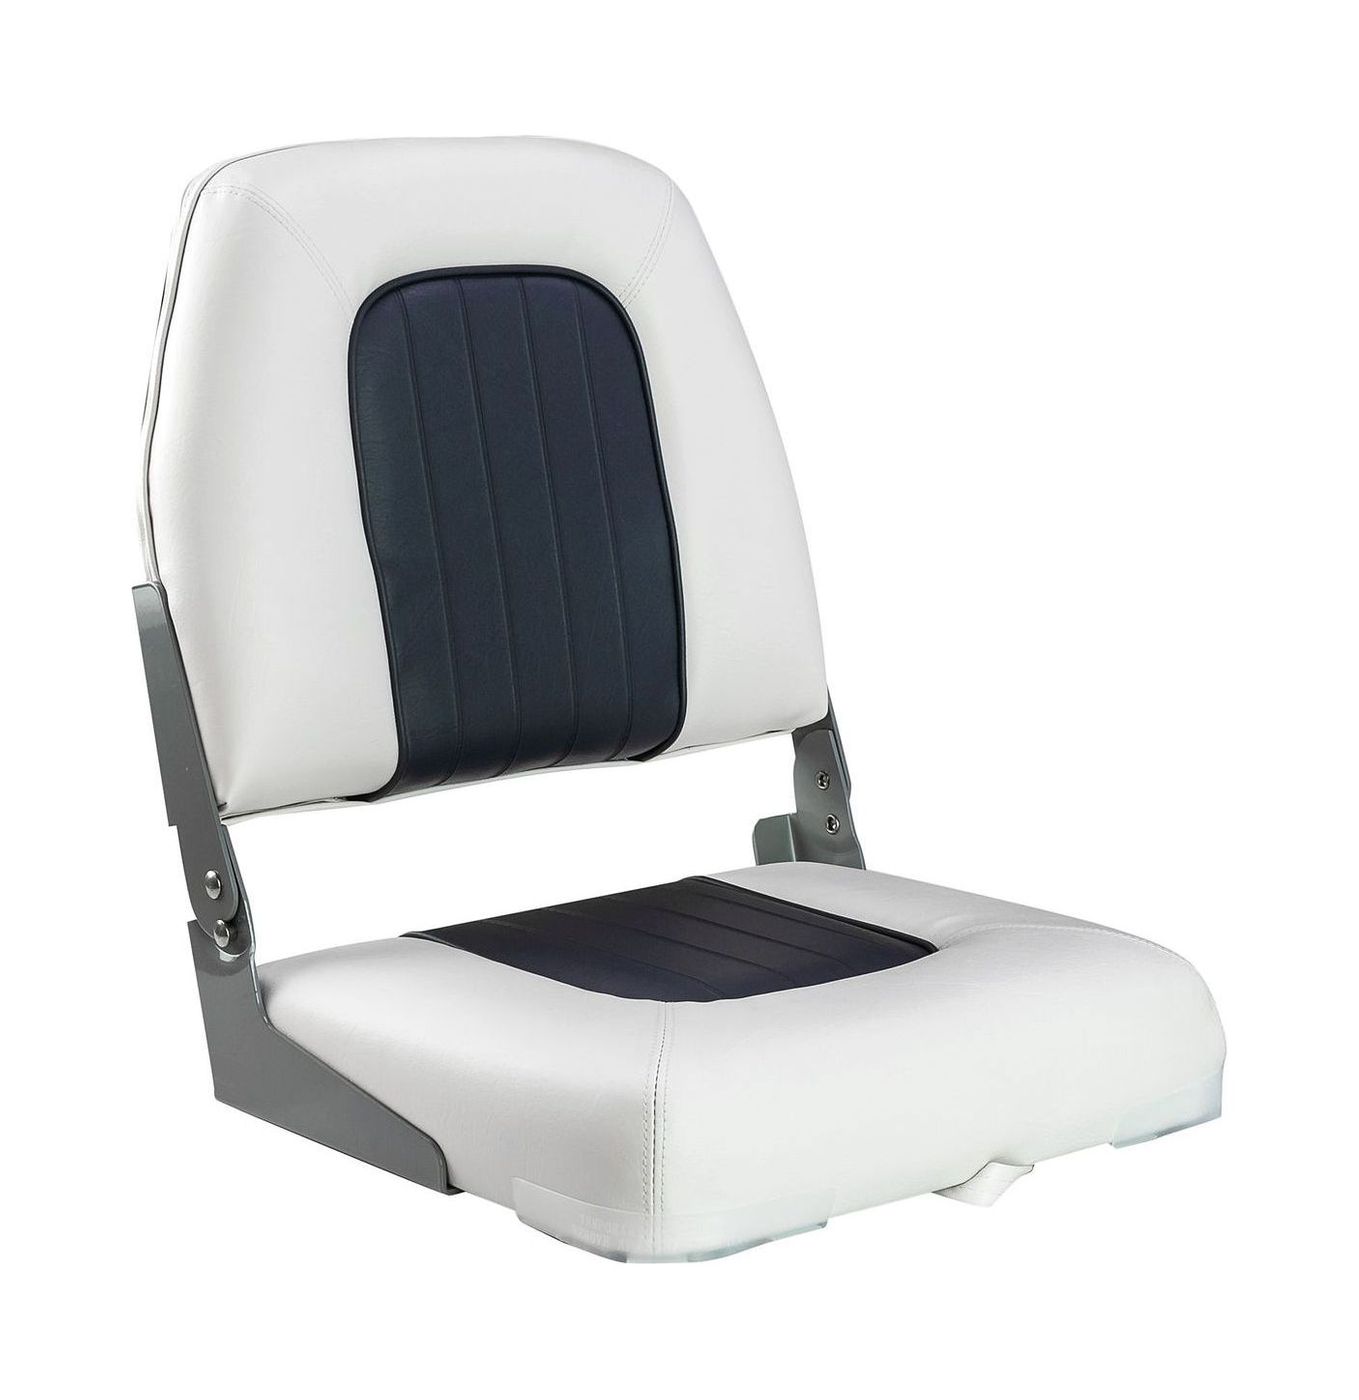 Кресло мягкое складное Deluxe, обивка винил, цвет белый/угольный, Marine Rocket 75137WC-MR кресло tramp deluxe зеленый